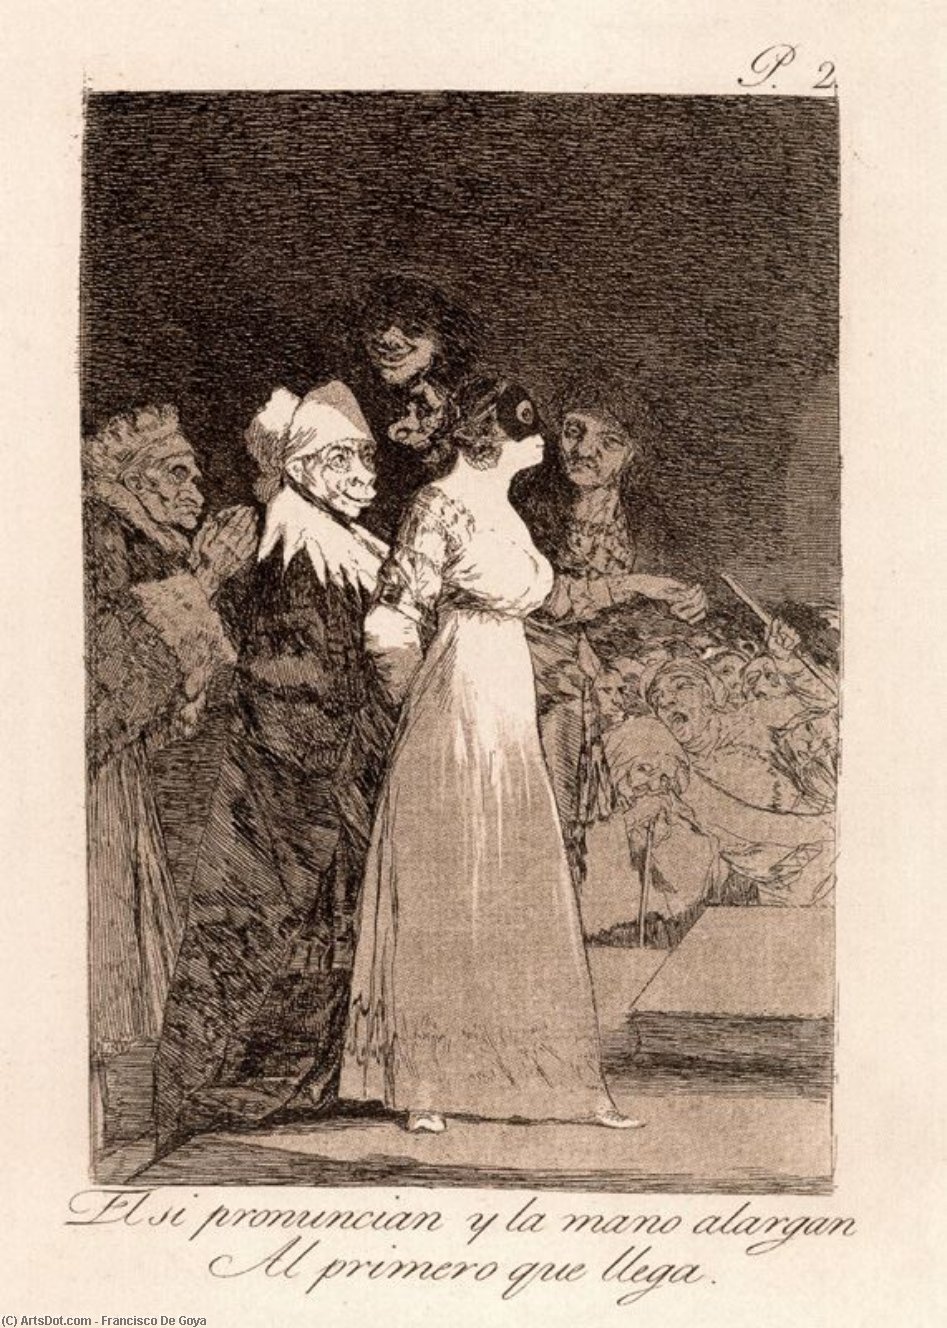 Wikioo.org - The Encyclopedia of Fine Arts - Painting, Artwork by Francisco De Goya - El si pronuncian y la mano alargan Al primero que llegan